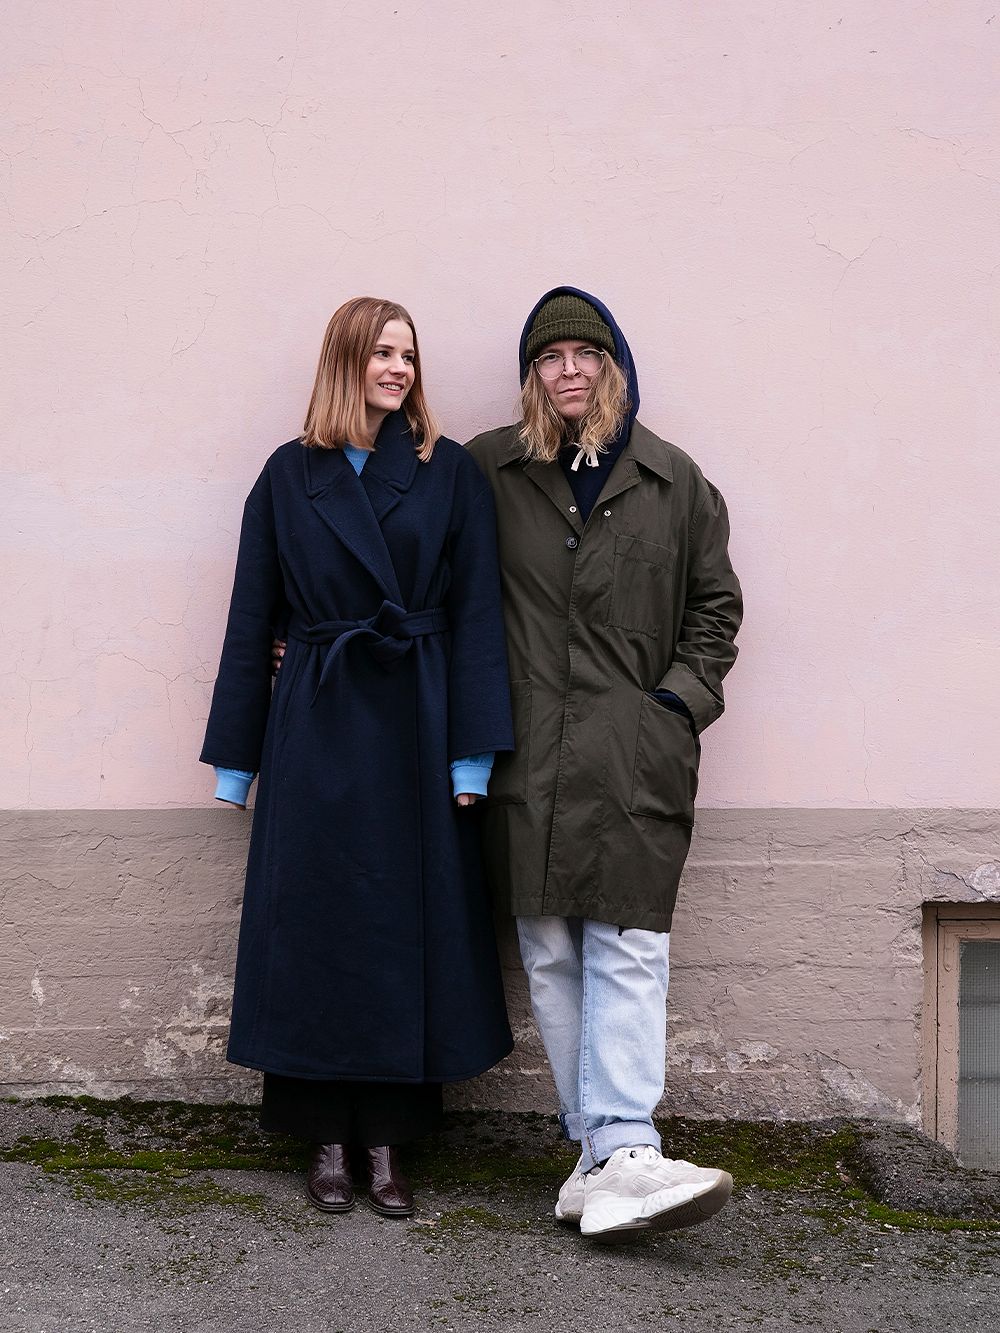 Laura Kuusajoki and Jonne Heinonen